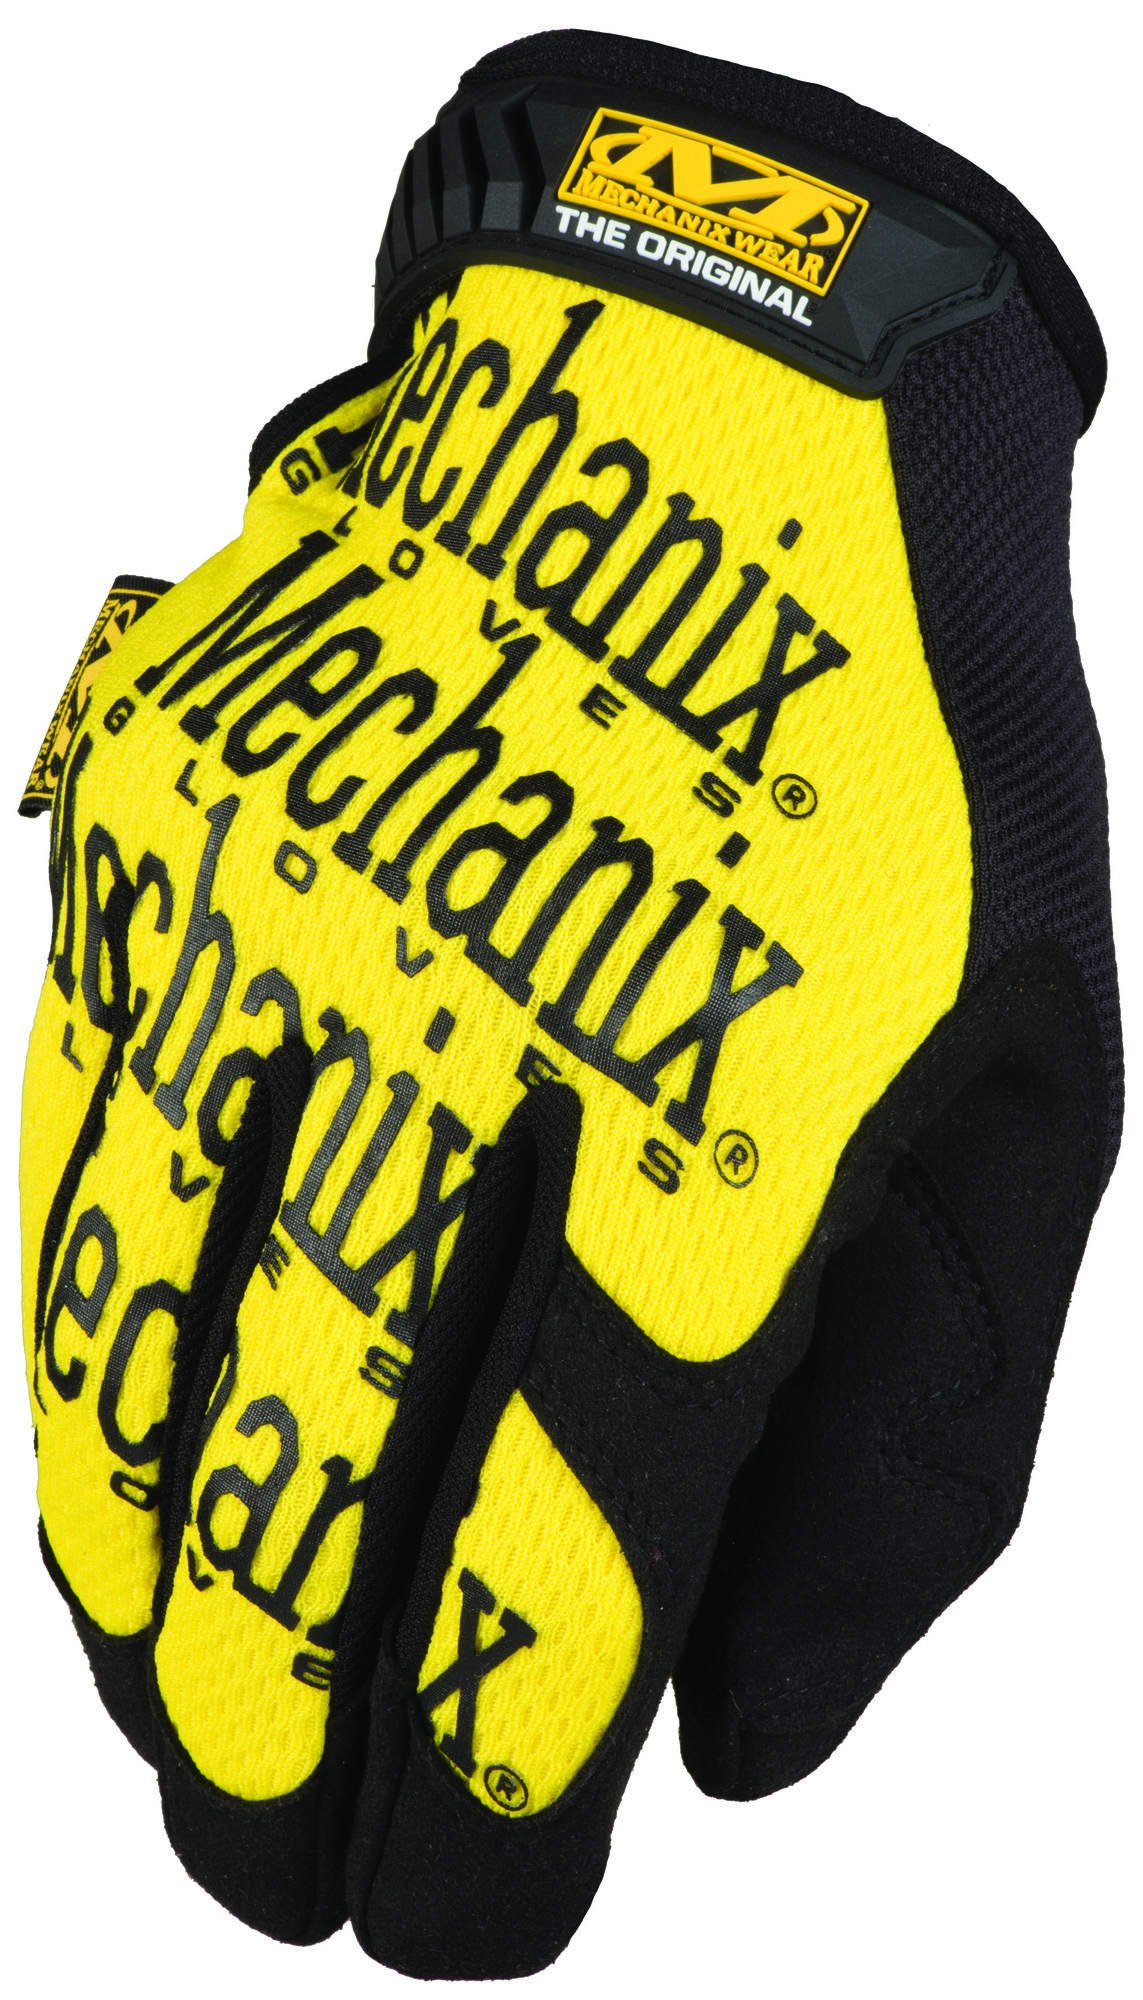 MECHANIX Pracovné rukavice so syntetickou kožou Original - žlté XL/11